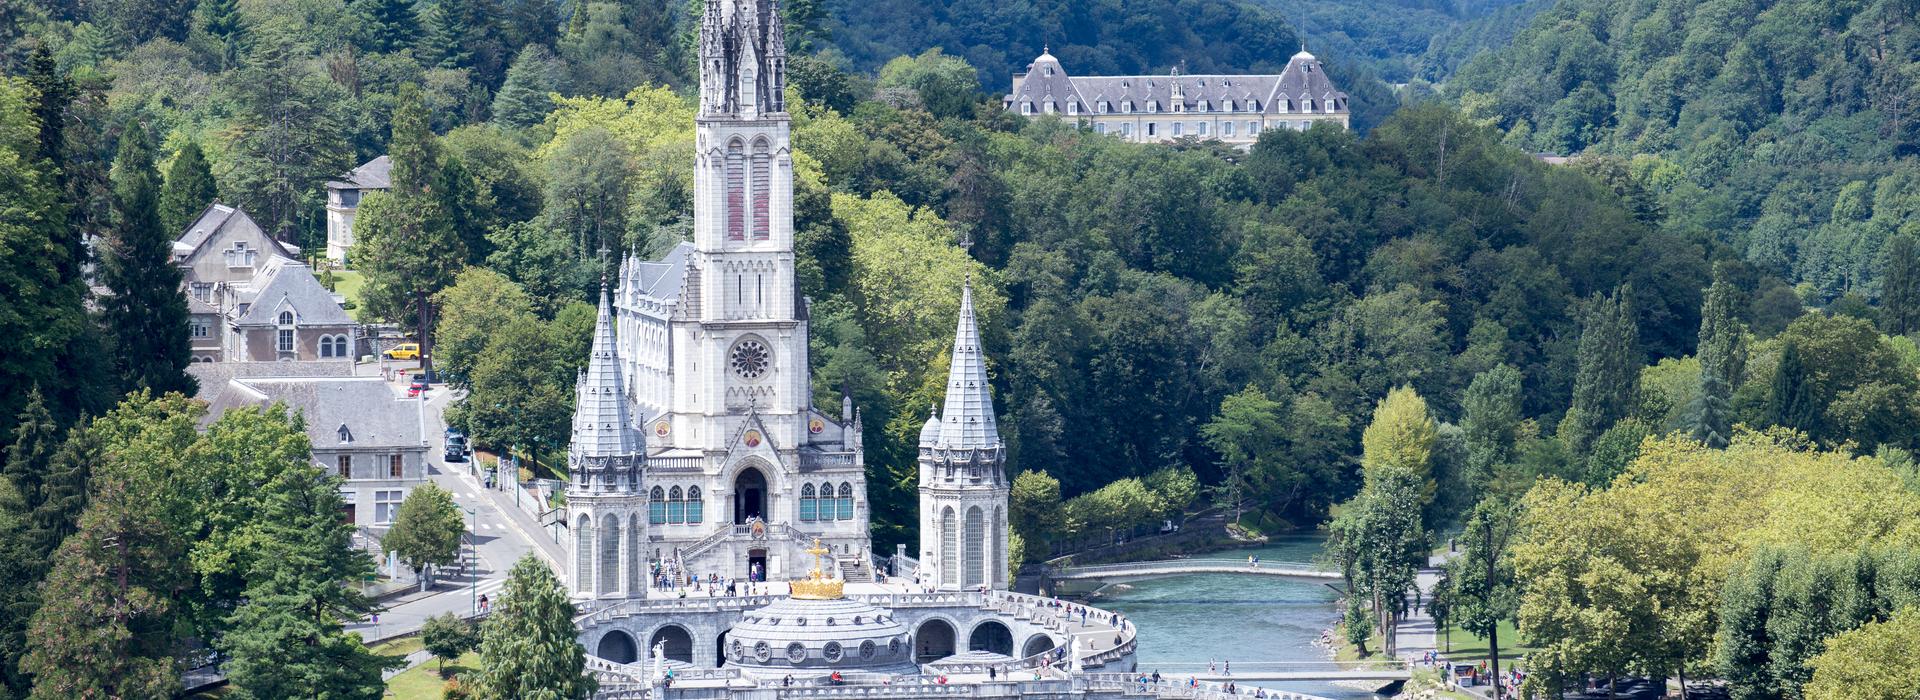 Lourdes, Spanisches Festland, Spanien, Europa